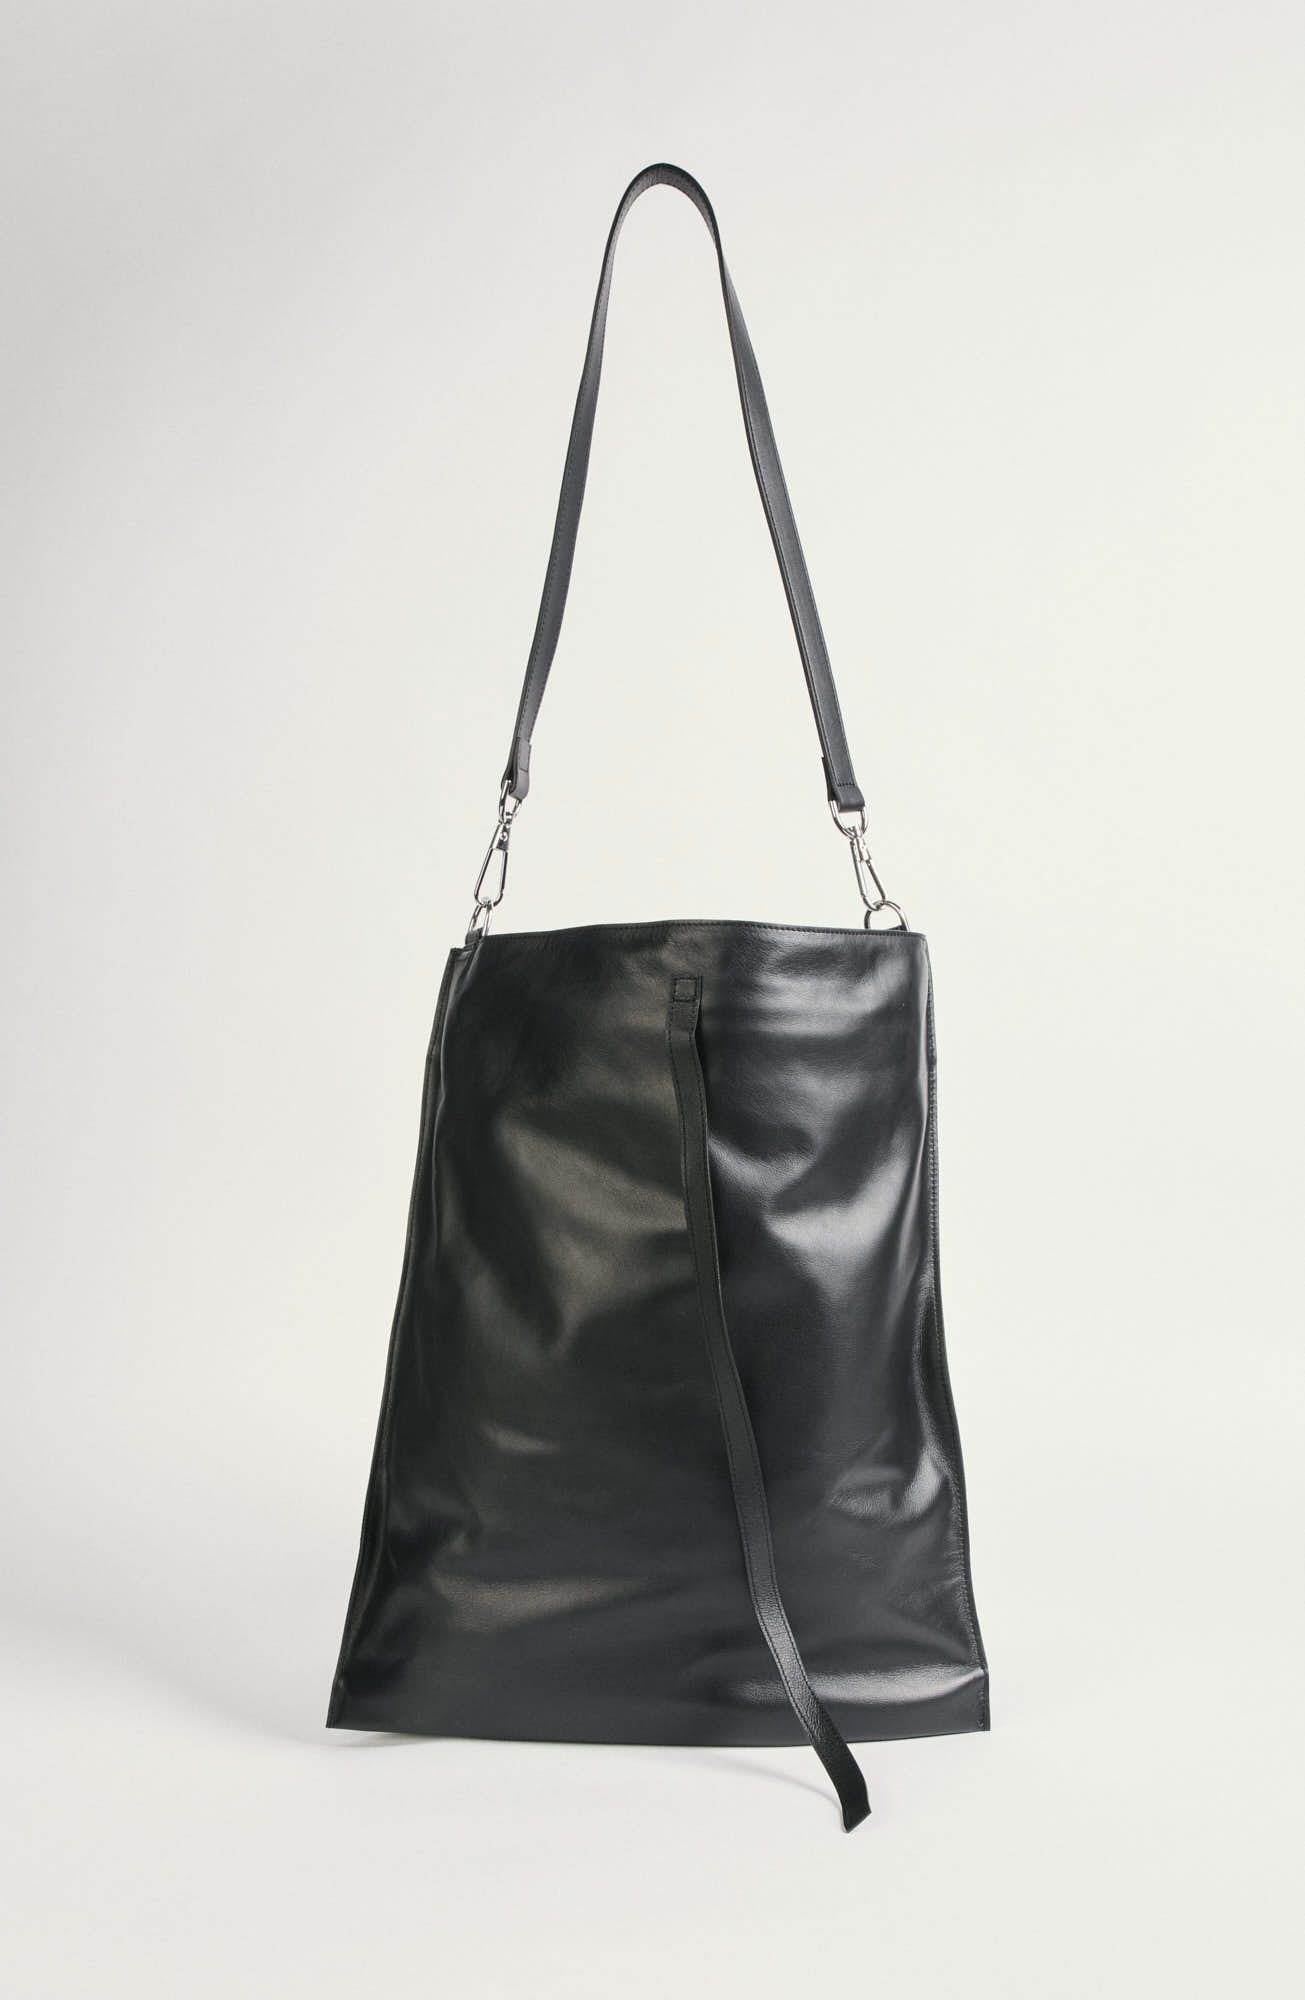 Black handbag "AB119